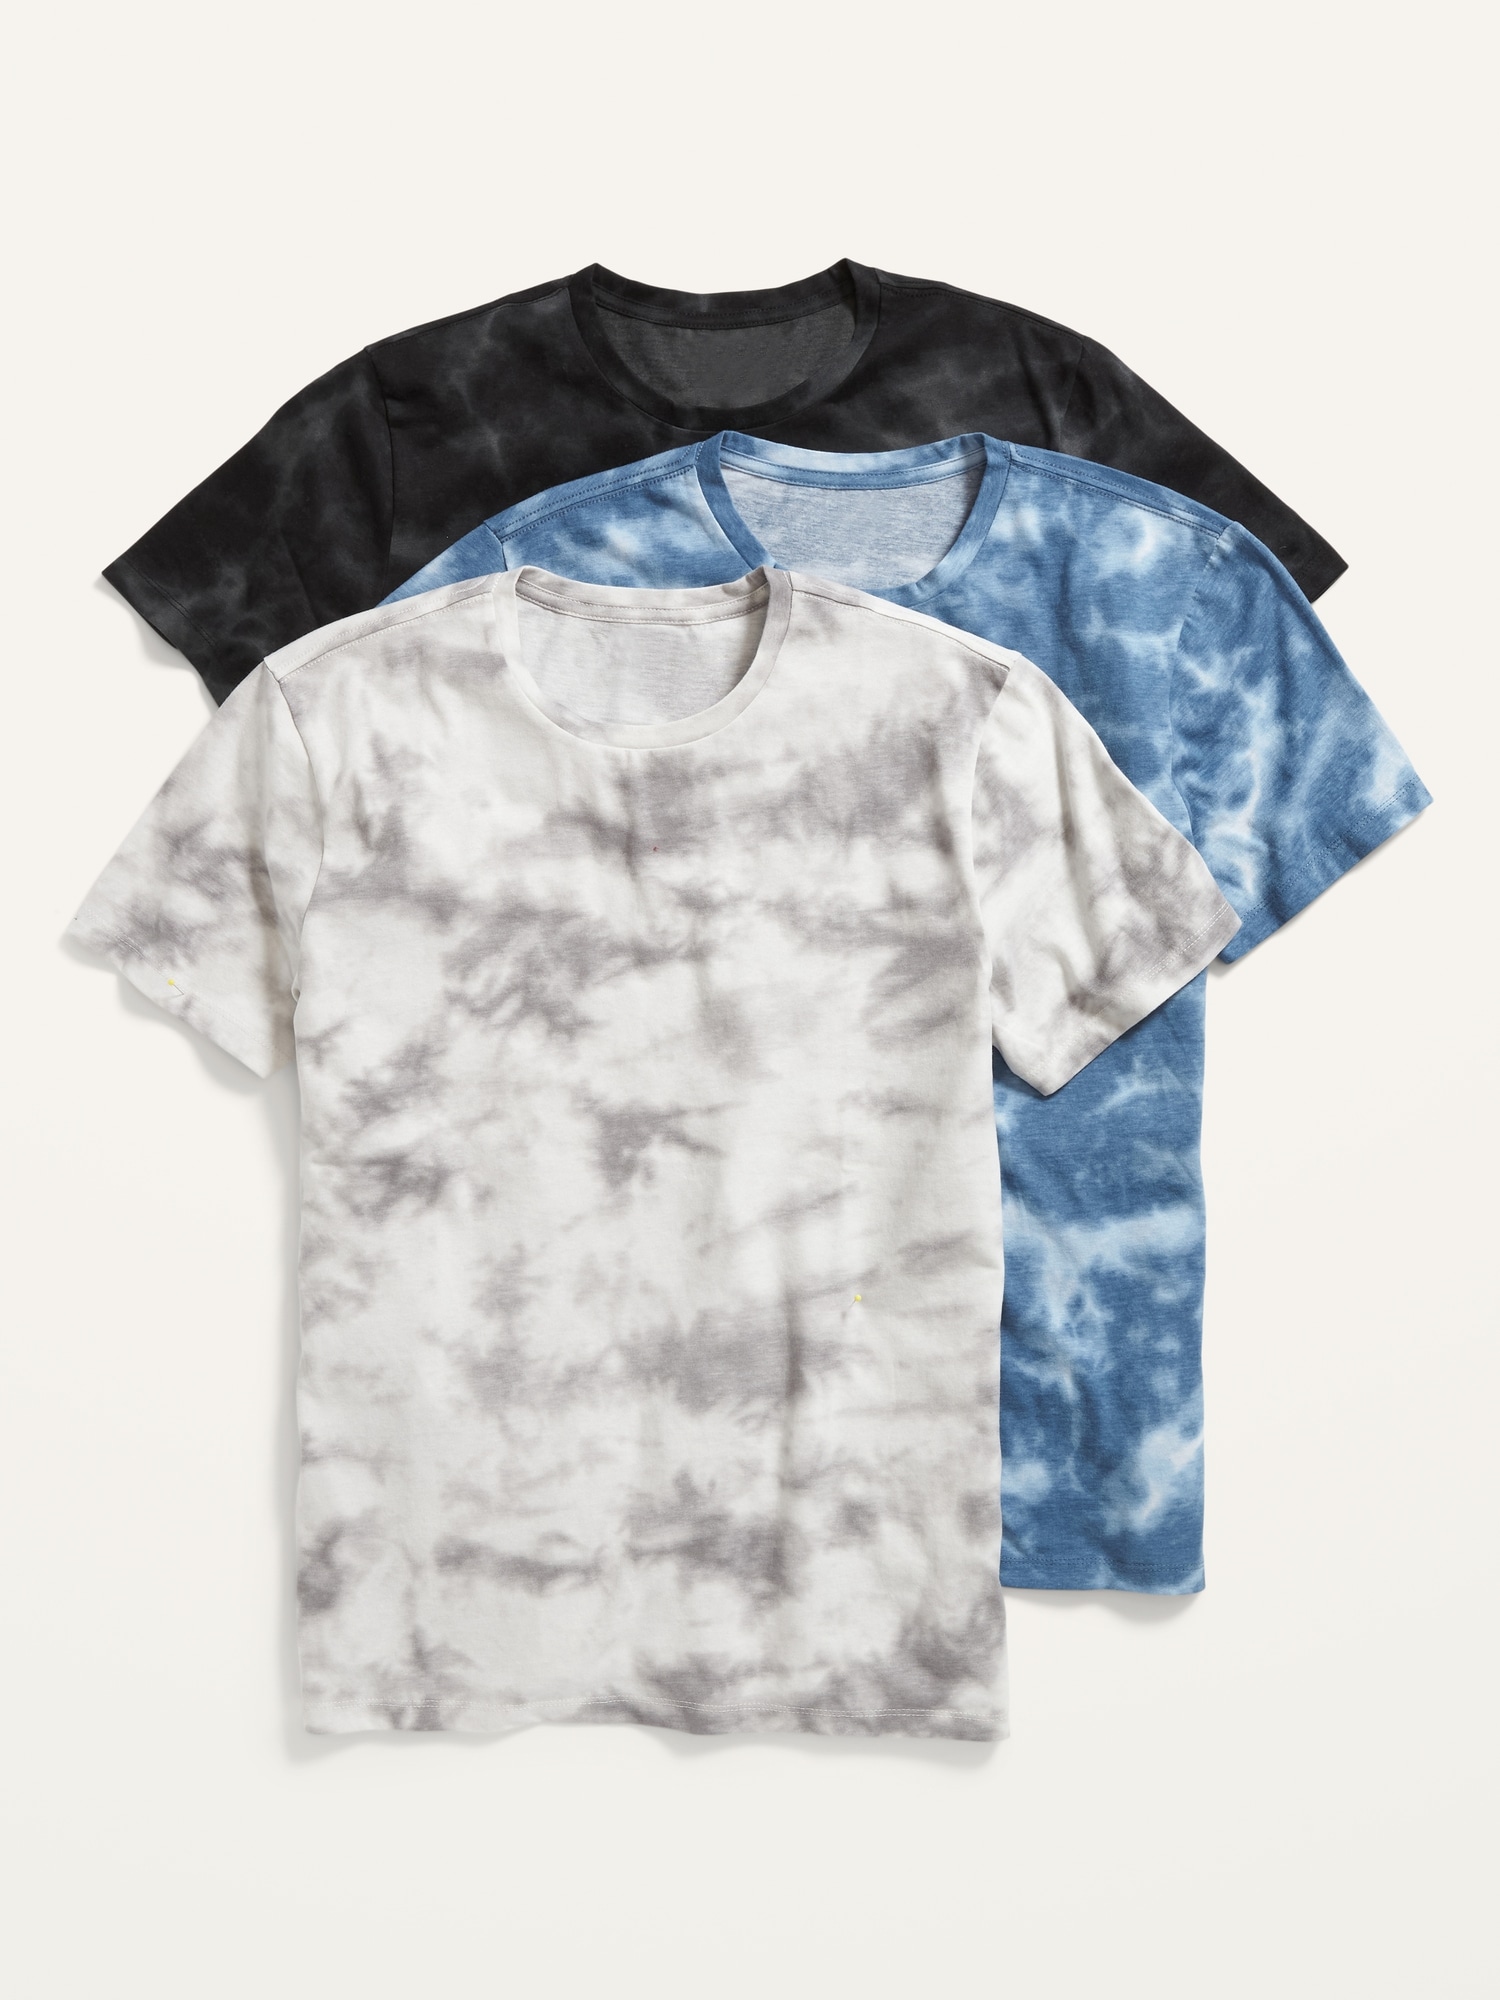 Buy Mens Tie Dye Shirt Online